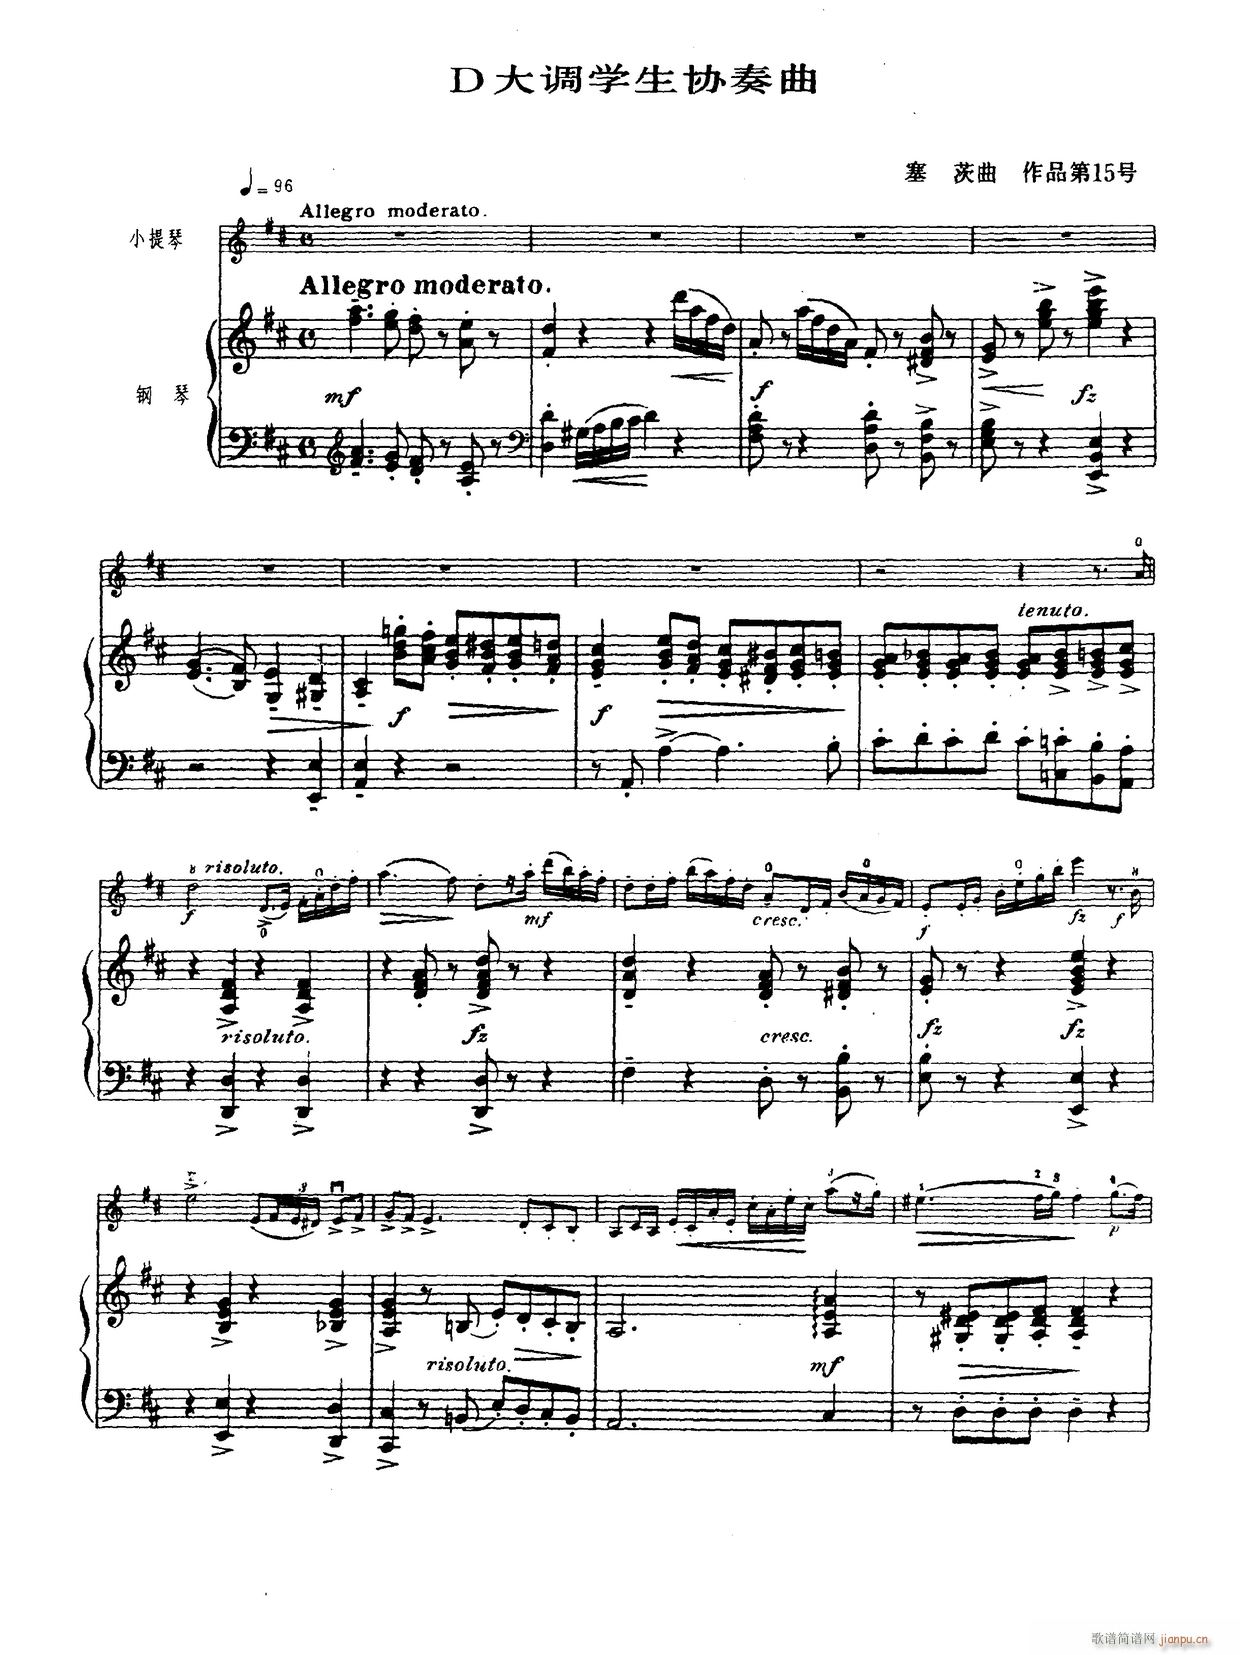 D大调学生协奏曲 塞茨作品第15号(小提琴谱)1